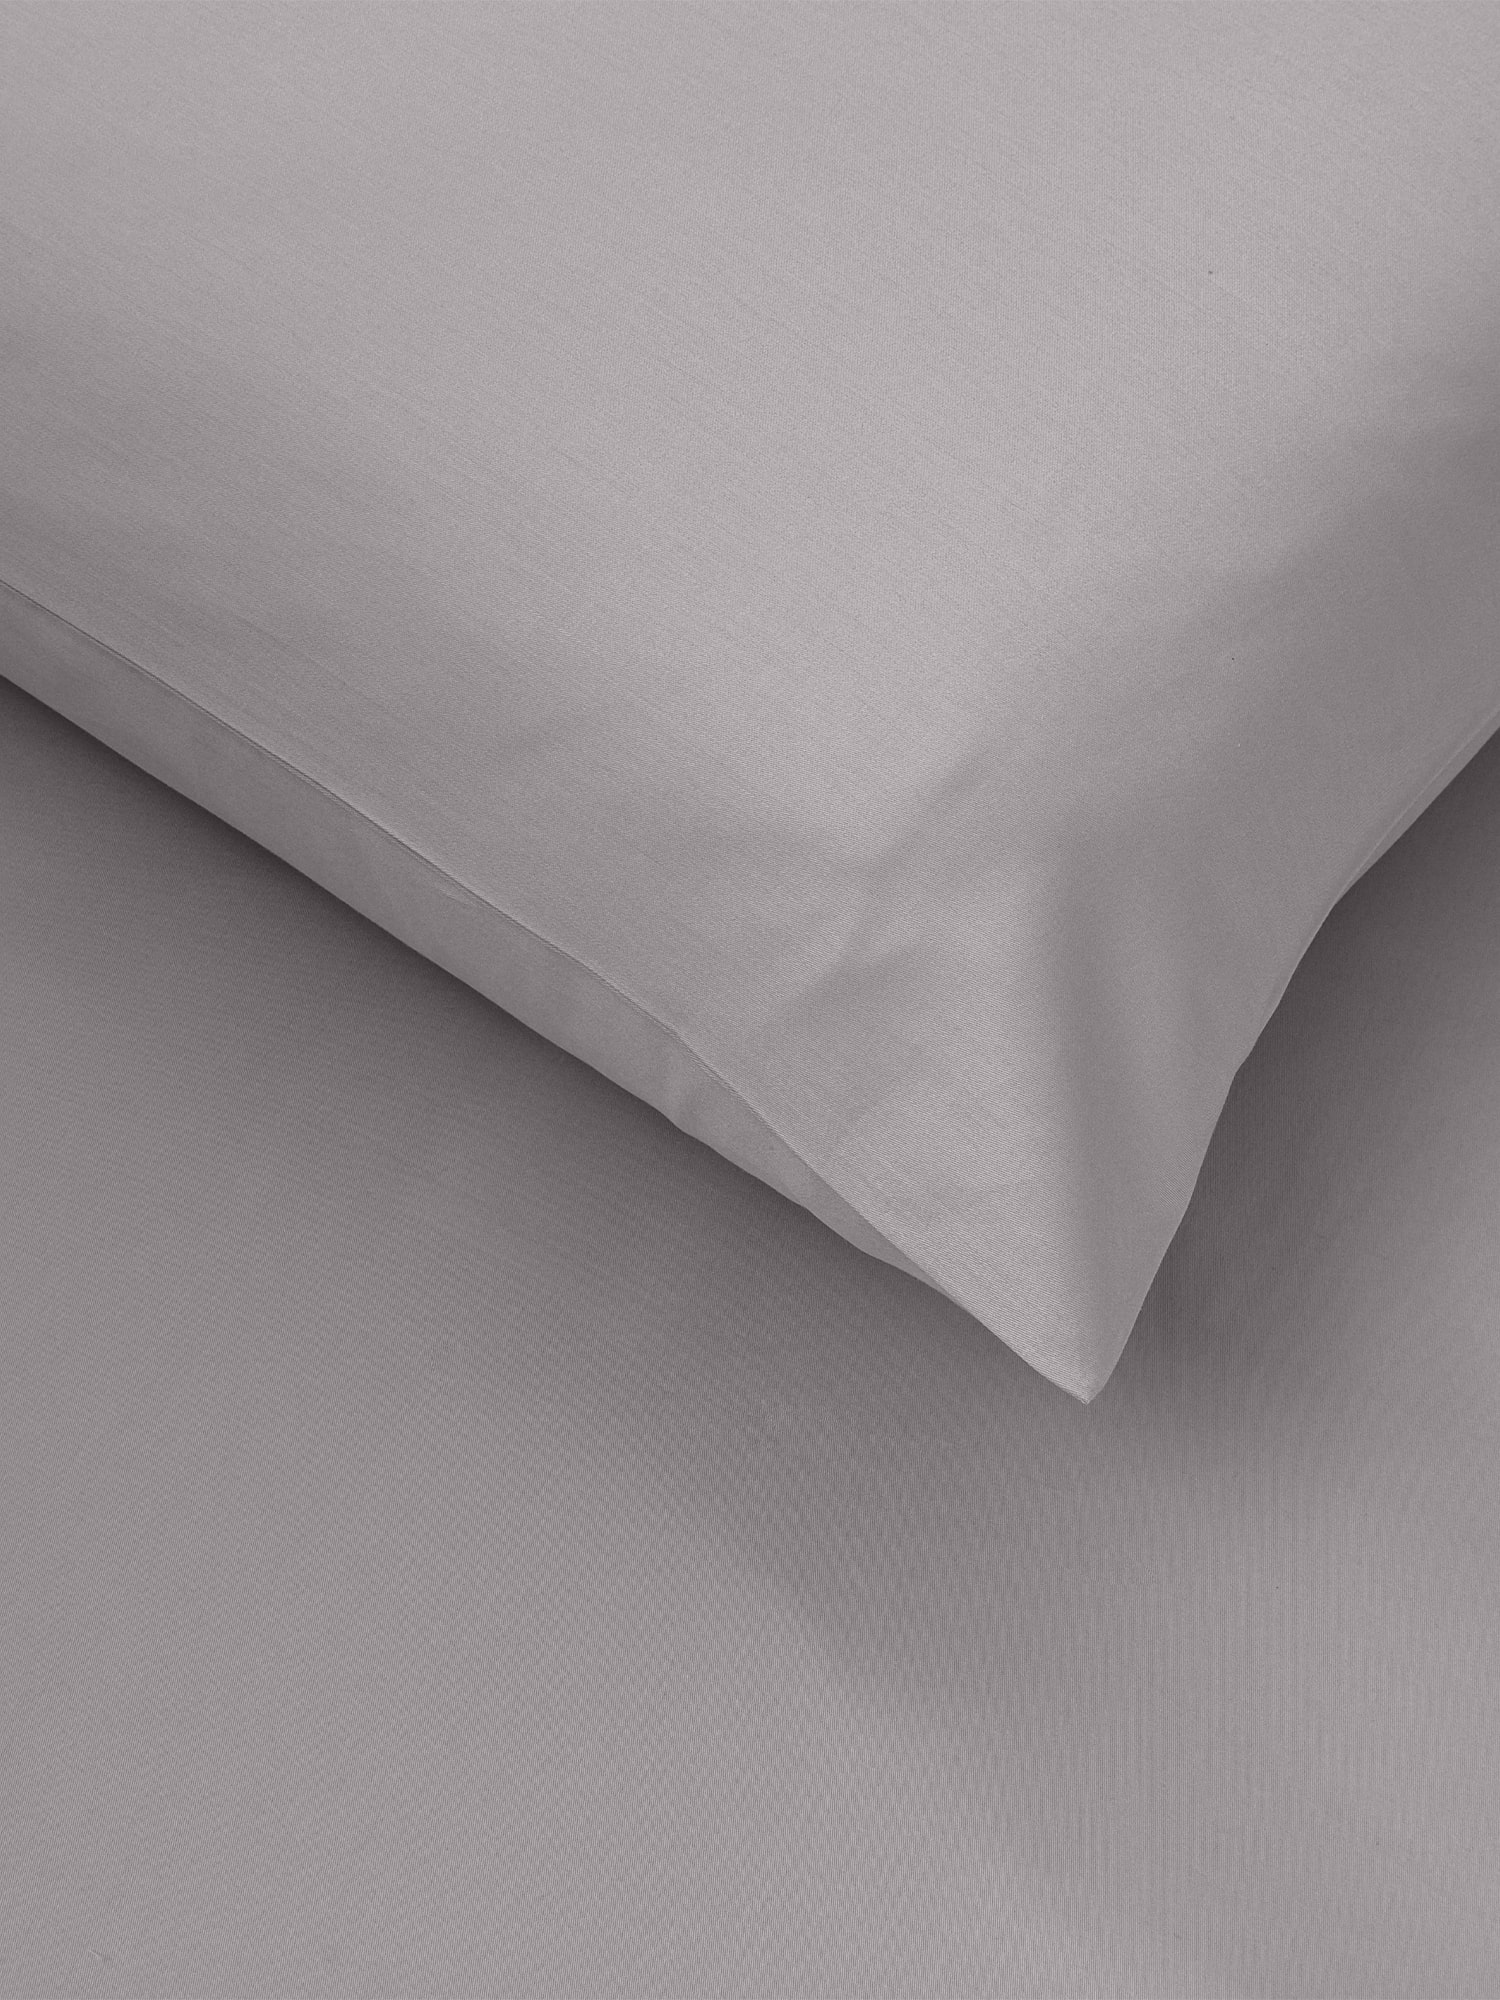 svijetlo siva srebrna damast posteljina plahta jastučnica 100 posto pamuk damast frette